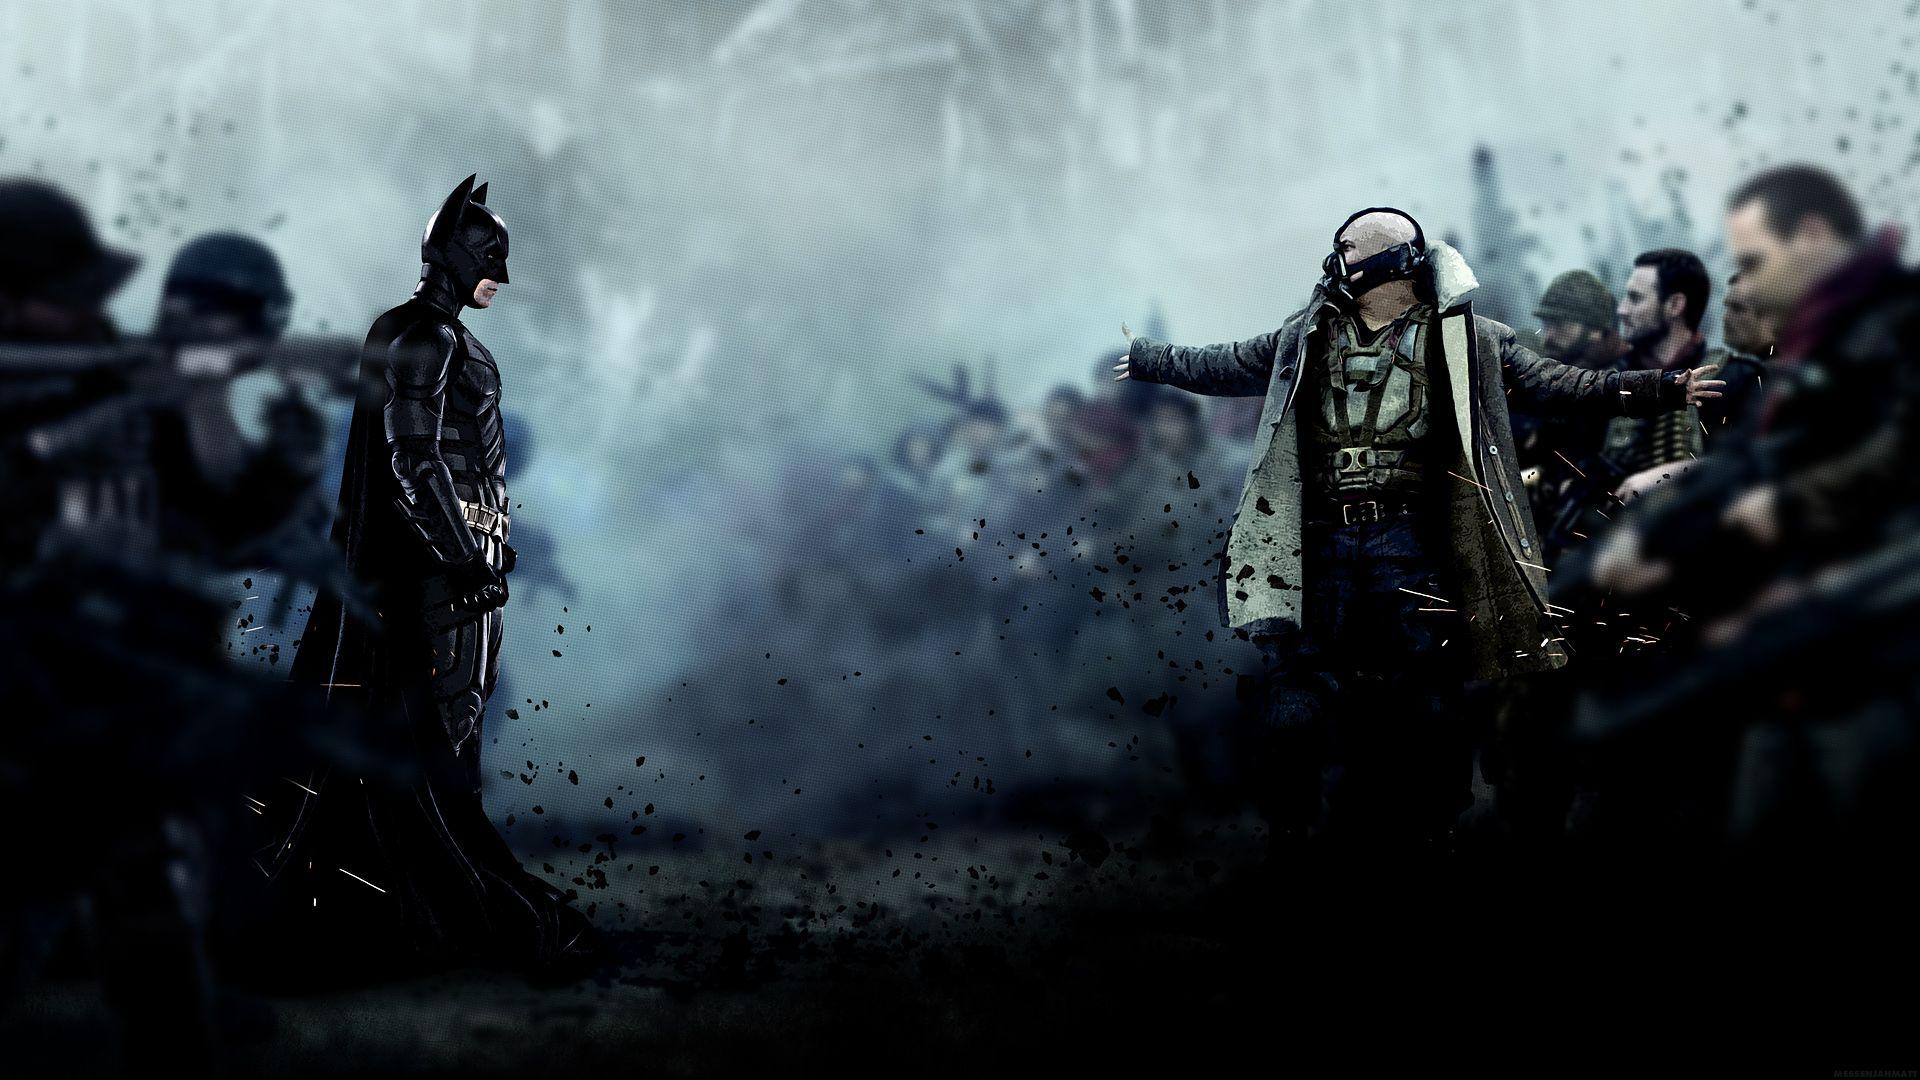 DARK KNIGHT RISES batman superhero bane HD wallpaperx1080